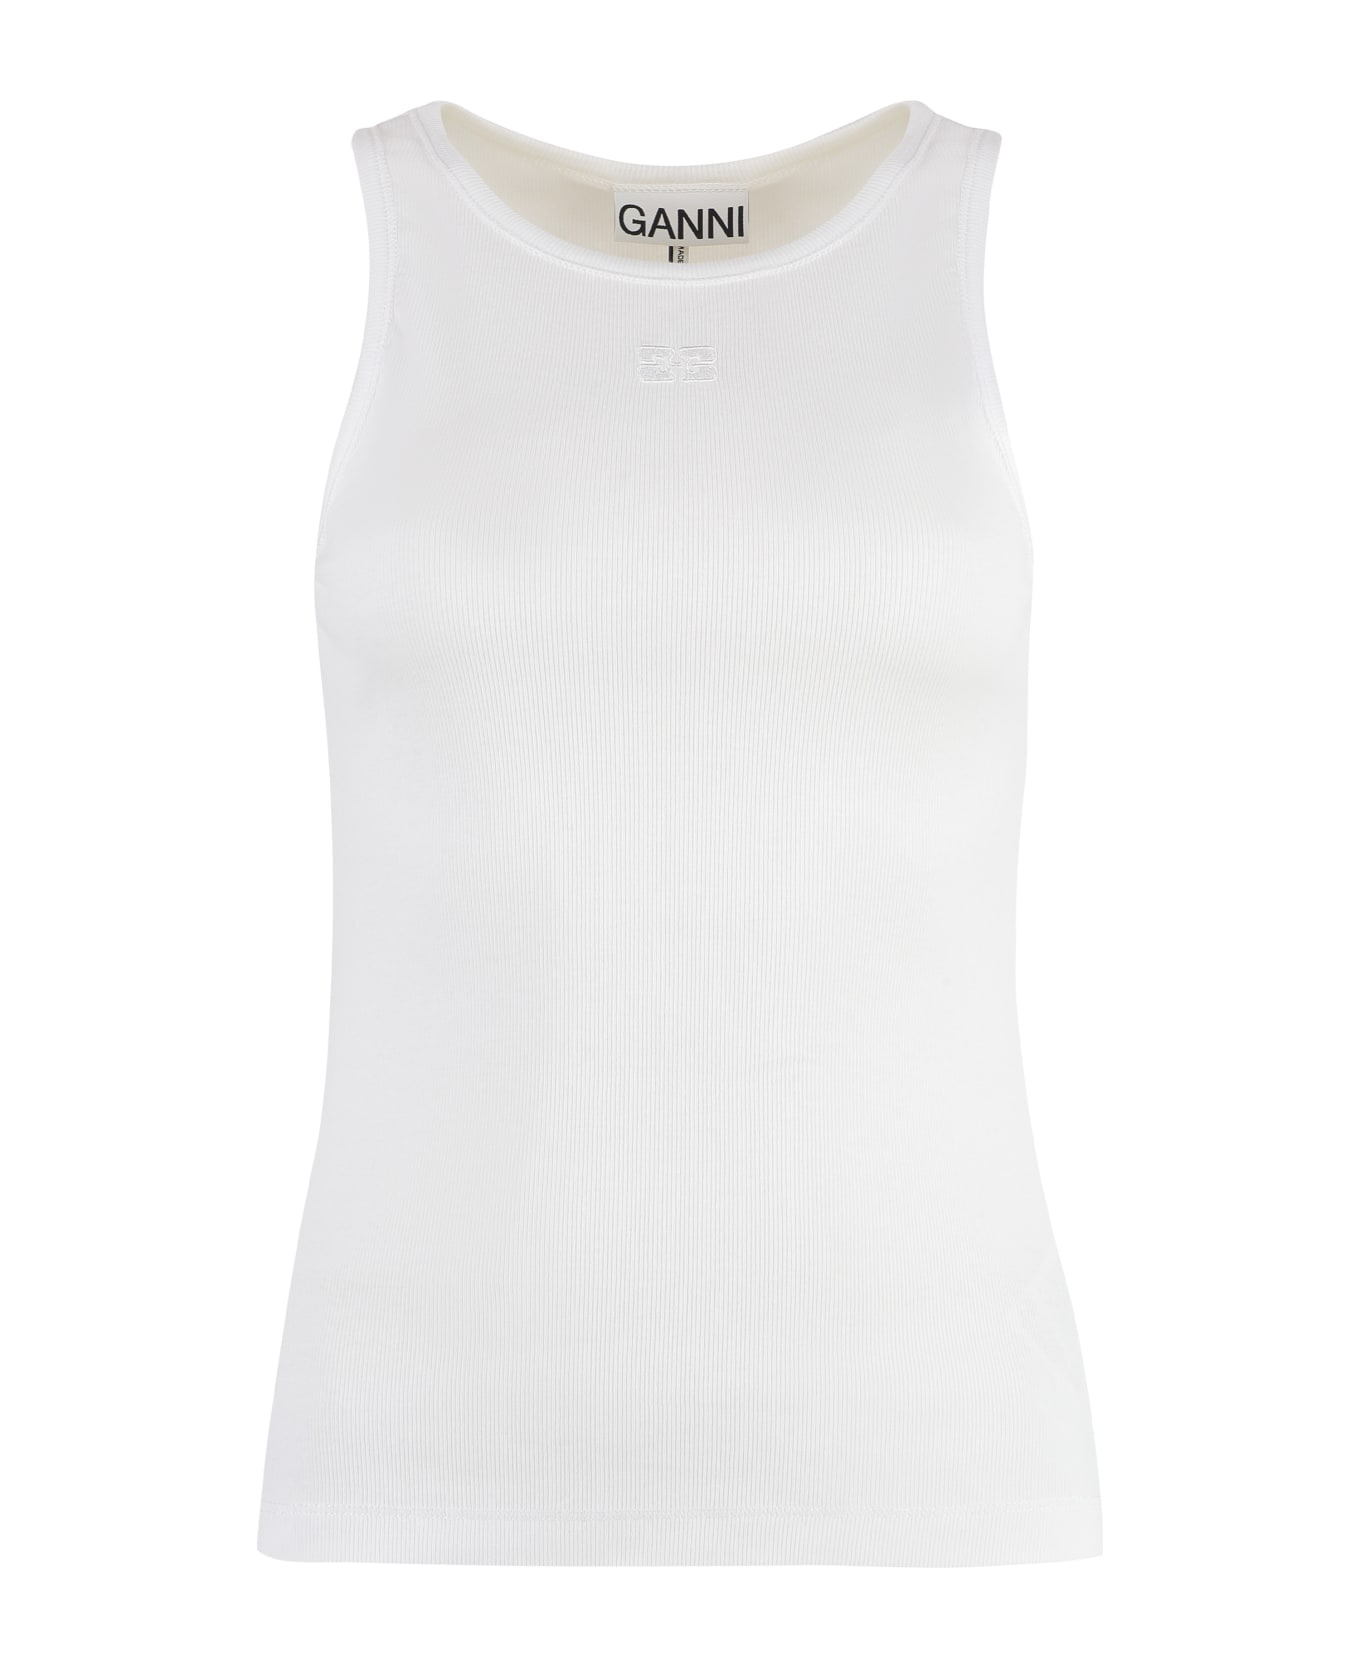 Ganni Cotton Tank Top - White